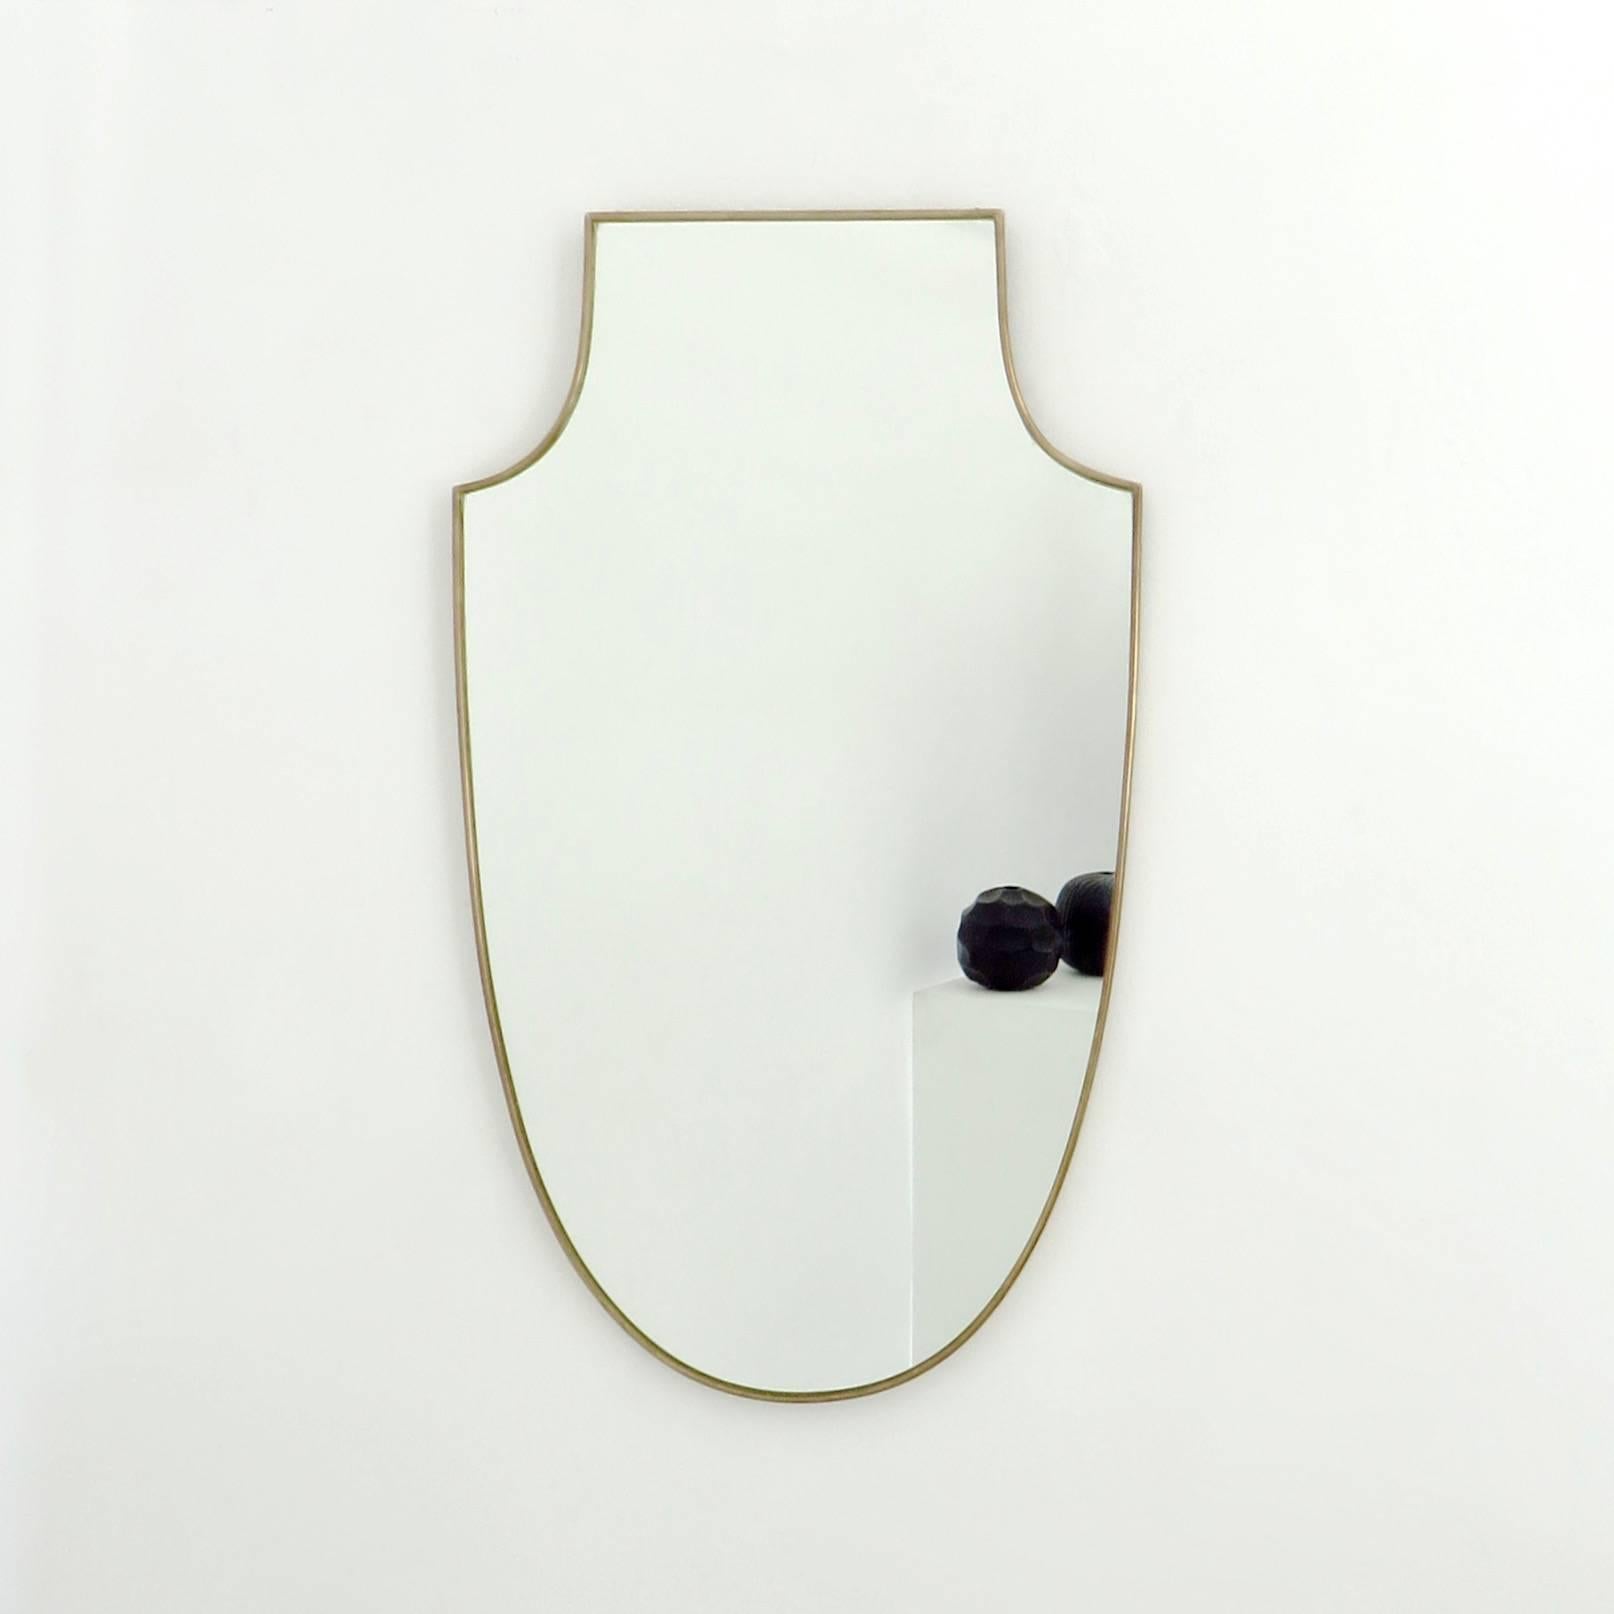 Mid-Century Modern Italian Vintage Brass Shield Shaped Framed Mirror 